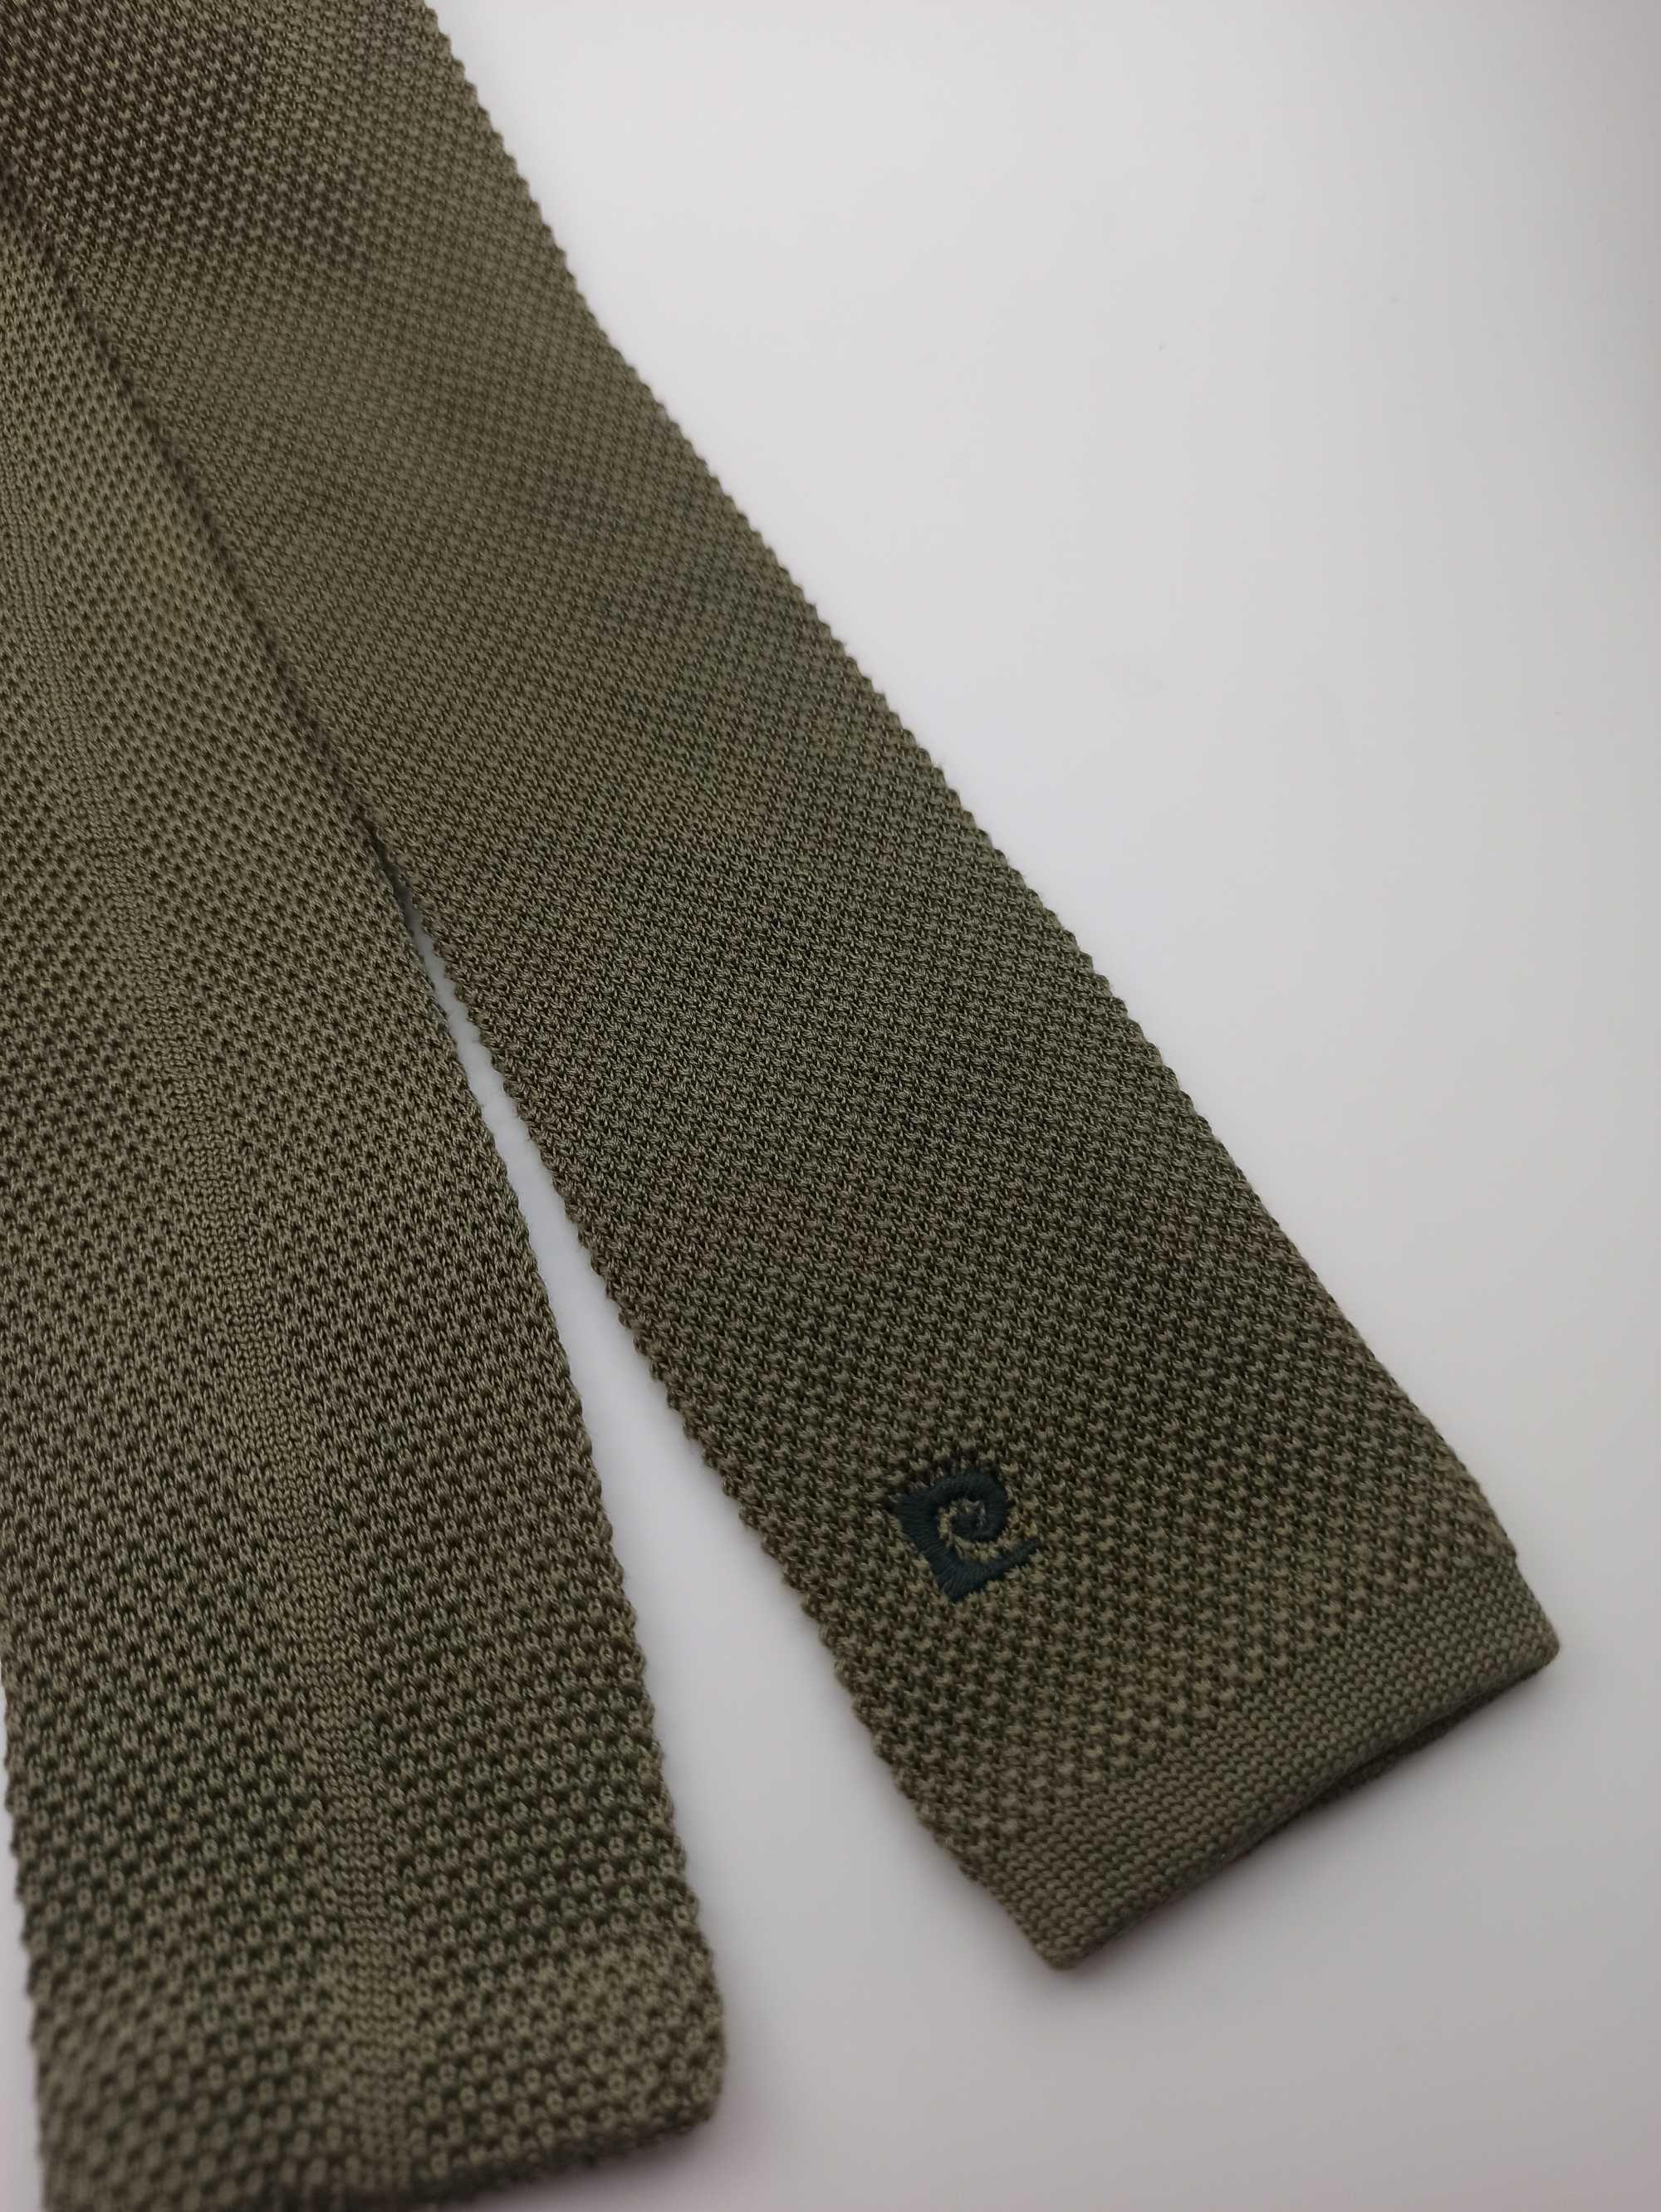 Pierre Cardin bawełniany krawat knit zielony pc06